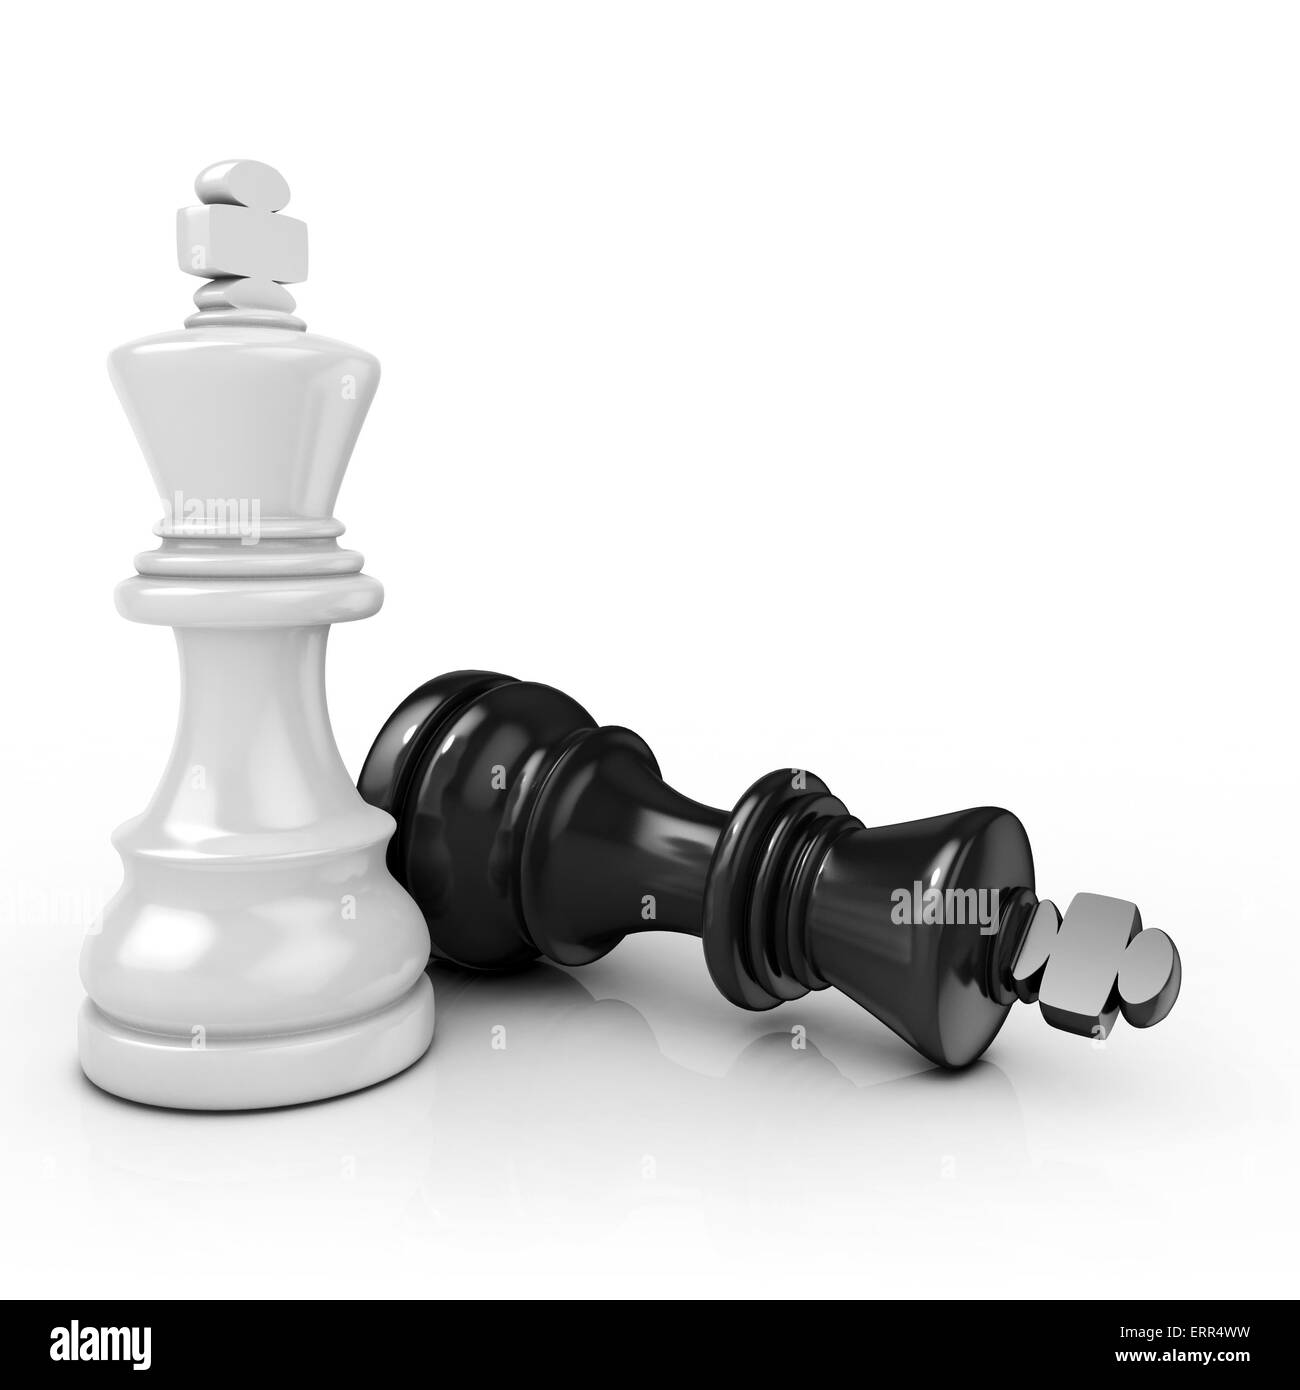 Ein König Schach Stück Mit Anderen Im Hintergrund. Geringe